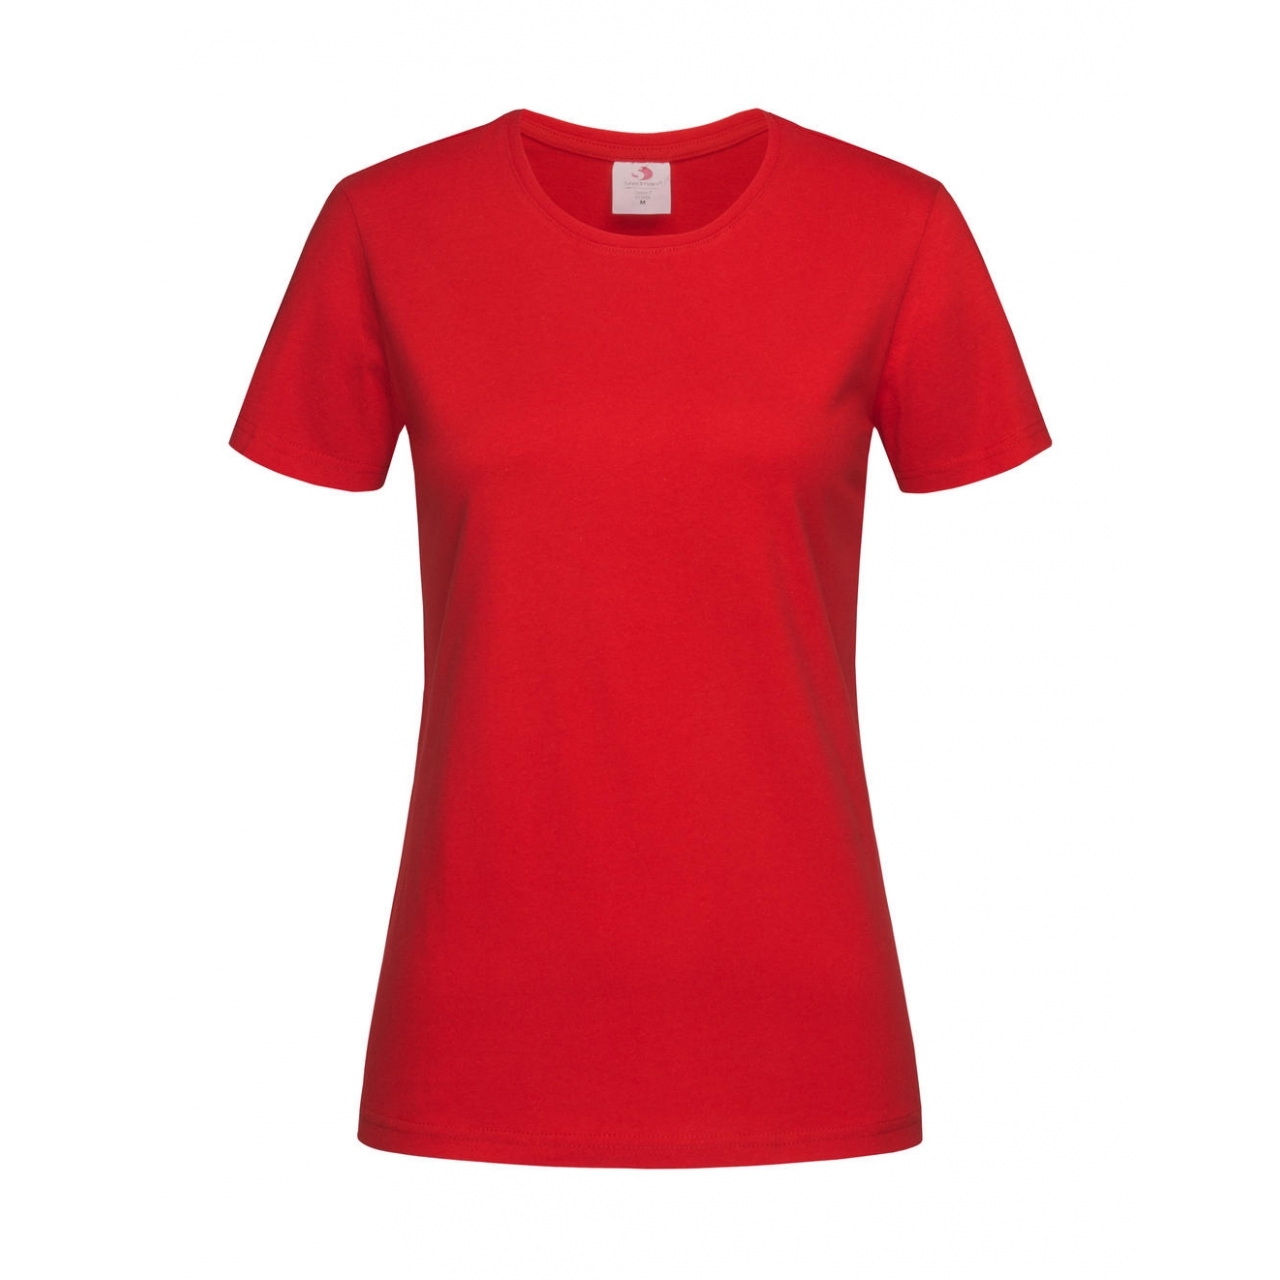 Tričko dámské Stedman Fitted s kulatým výstřihem - červené, XS